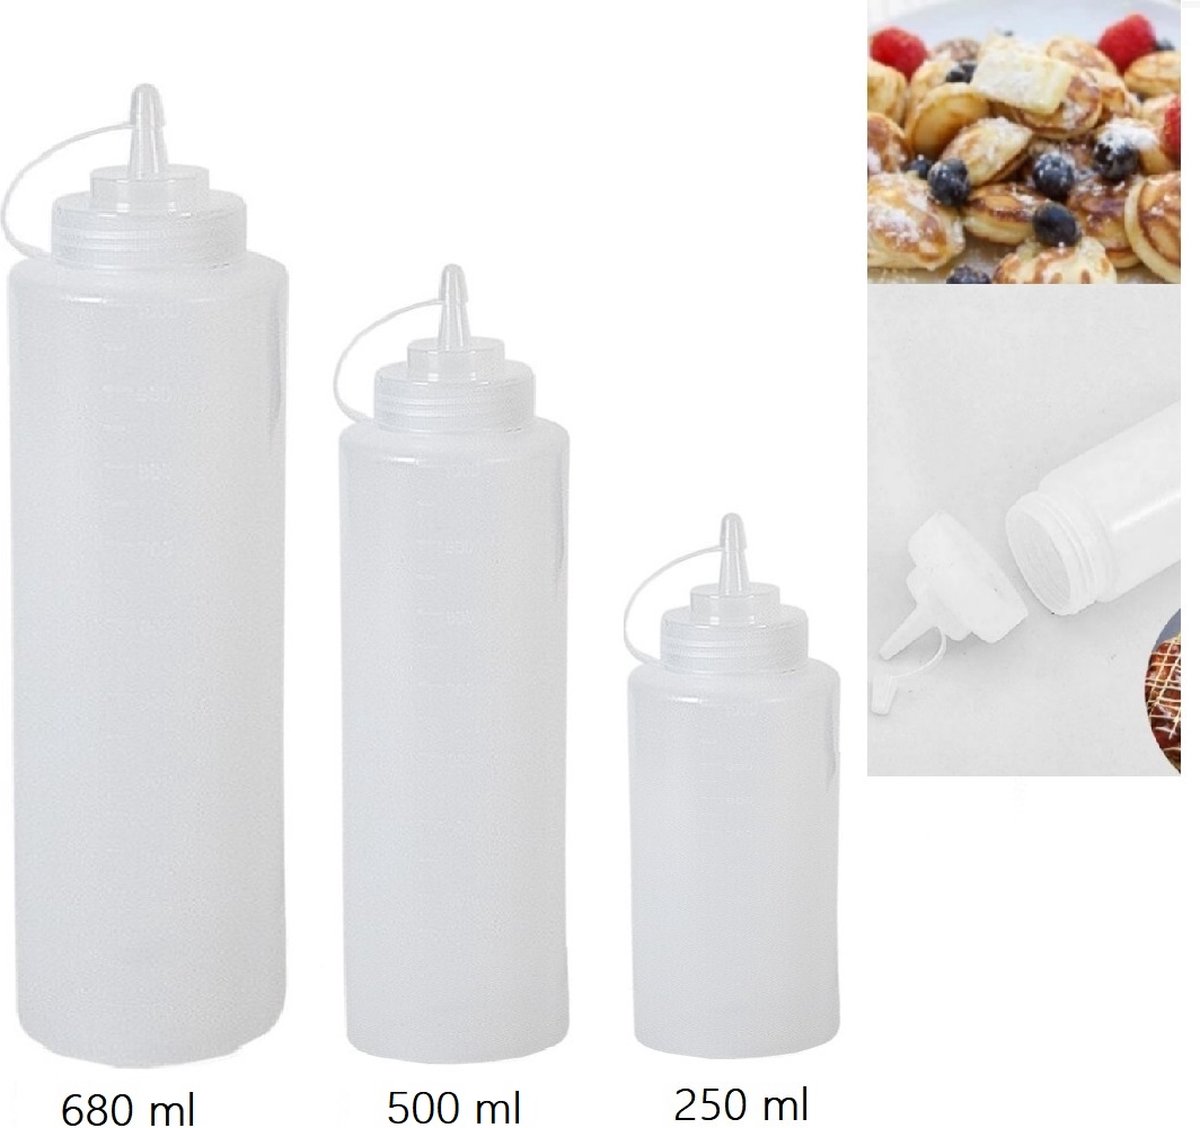 VOORDEEL Sausflessen met dop | 3 soorten S/M/L |680 ML-500 ML- 250 ML - Transparant doseerflacon/ flessen met dop- Portioneerflessen/ Knijpflessen / Sausflessen Transparante garneerflessen/doseerflessen/sausflessen